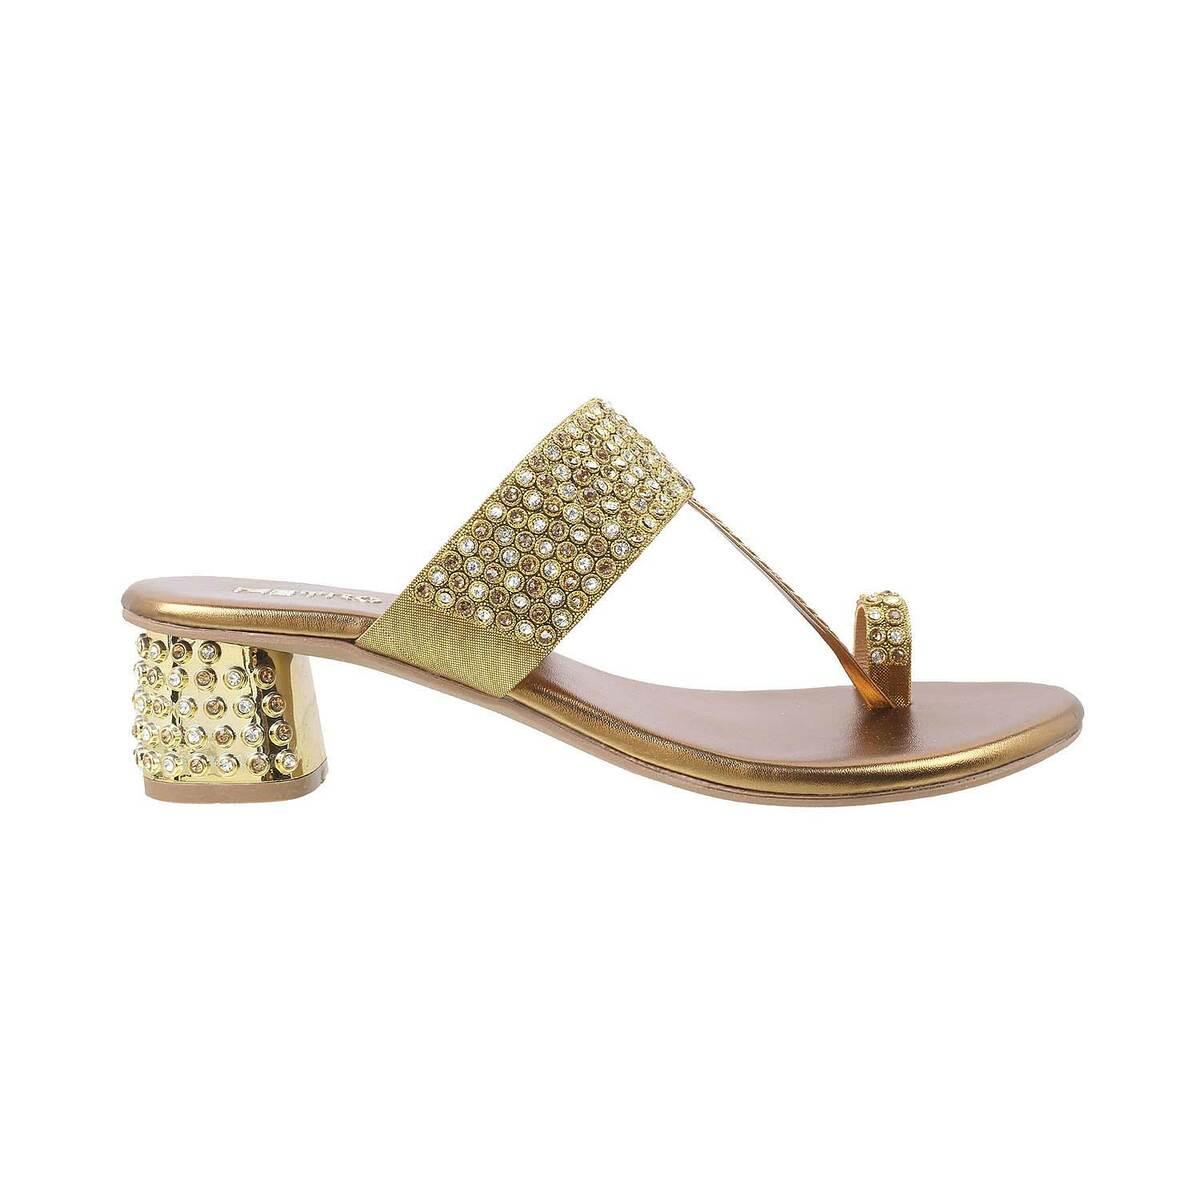 Buy Women Antique-Gold Ethnic Sandals Online | SKU: 35-103-28-36-Metro Shoes